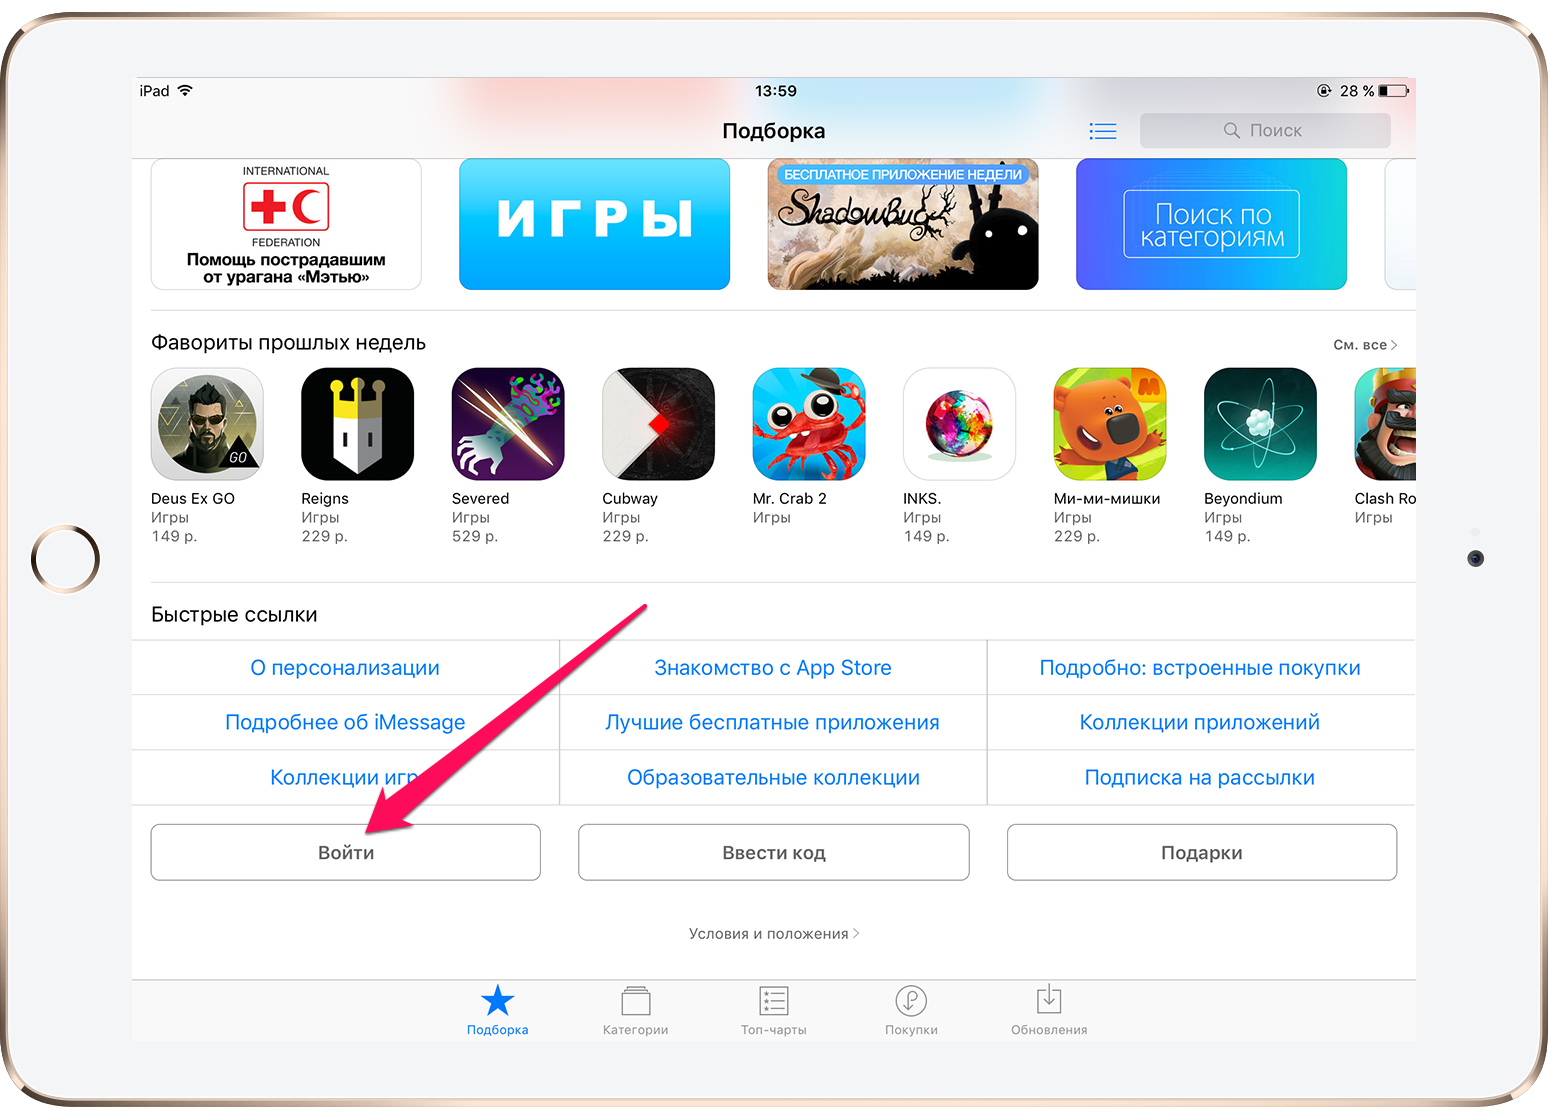 Купить подписку можно приложение. Магазин приложений эпл. Приложение в аппсторе. Как зайти в апп стор. Apple Store приложение.